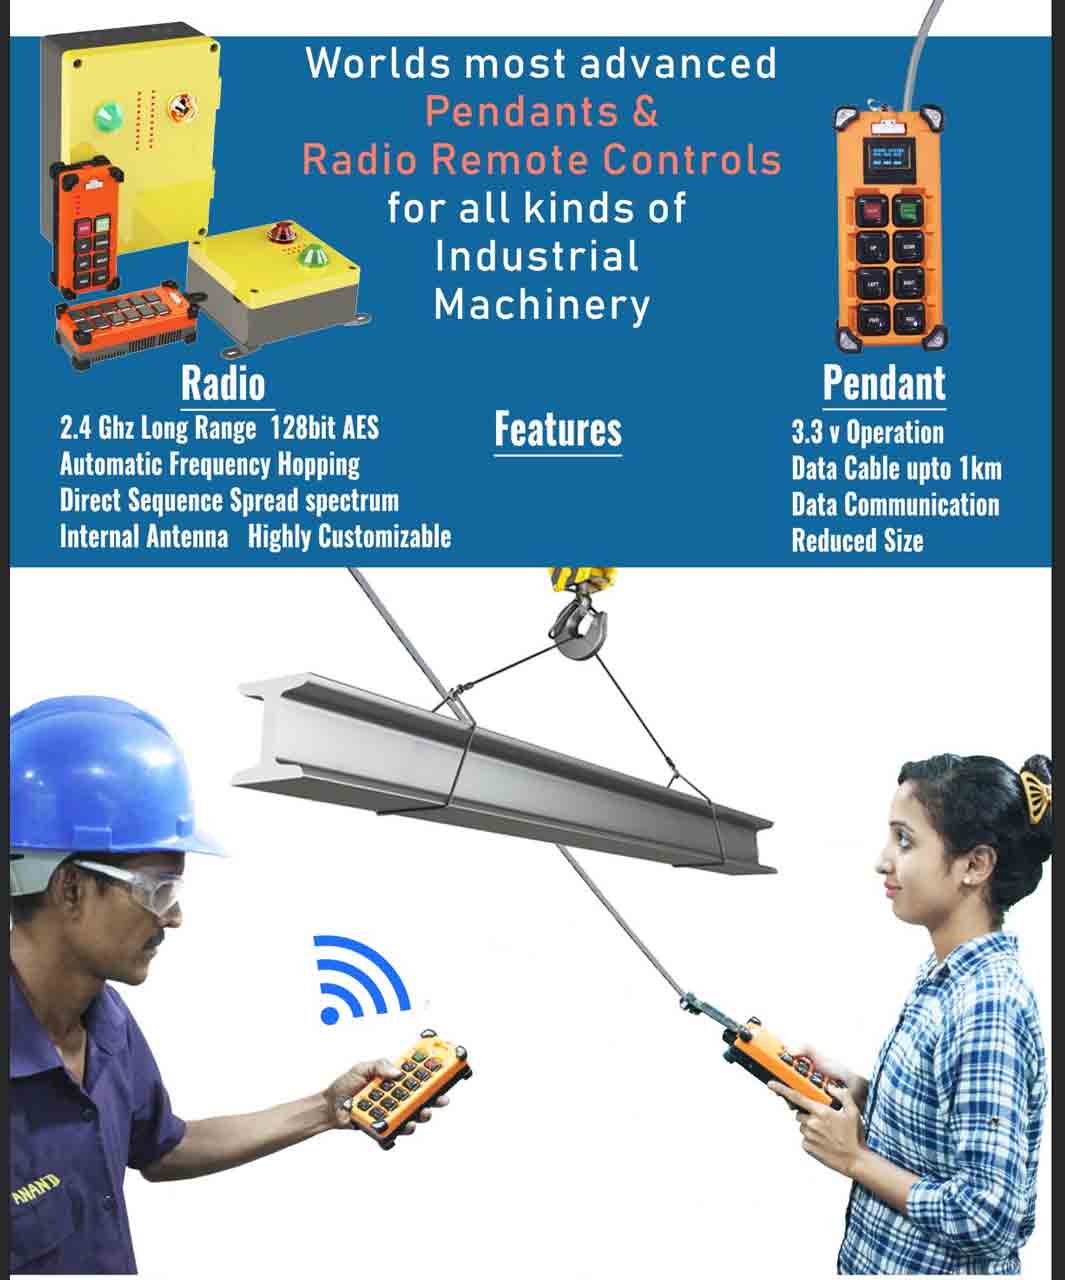 Crane Push Button Pendants vs Radio remote control